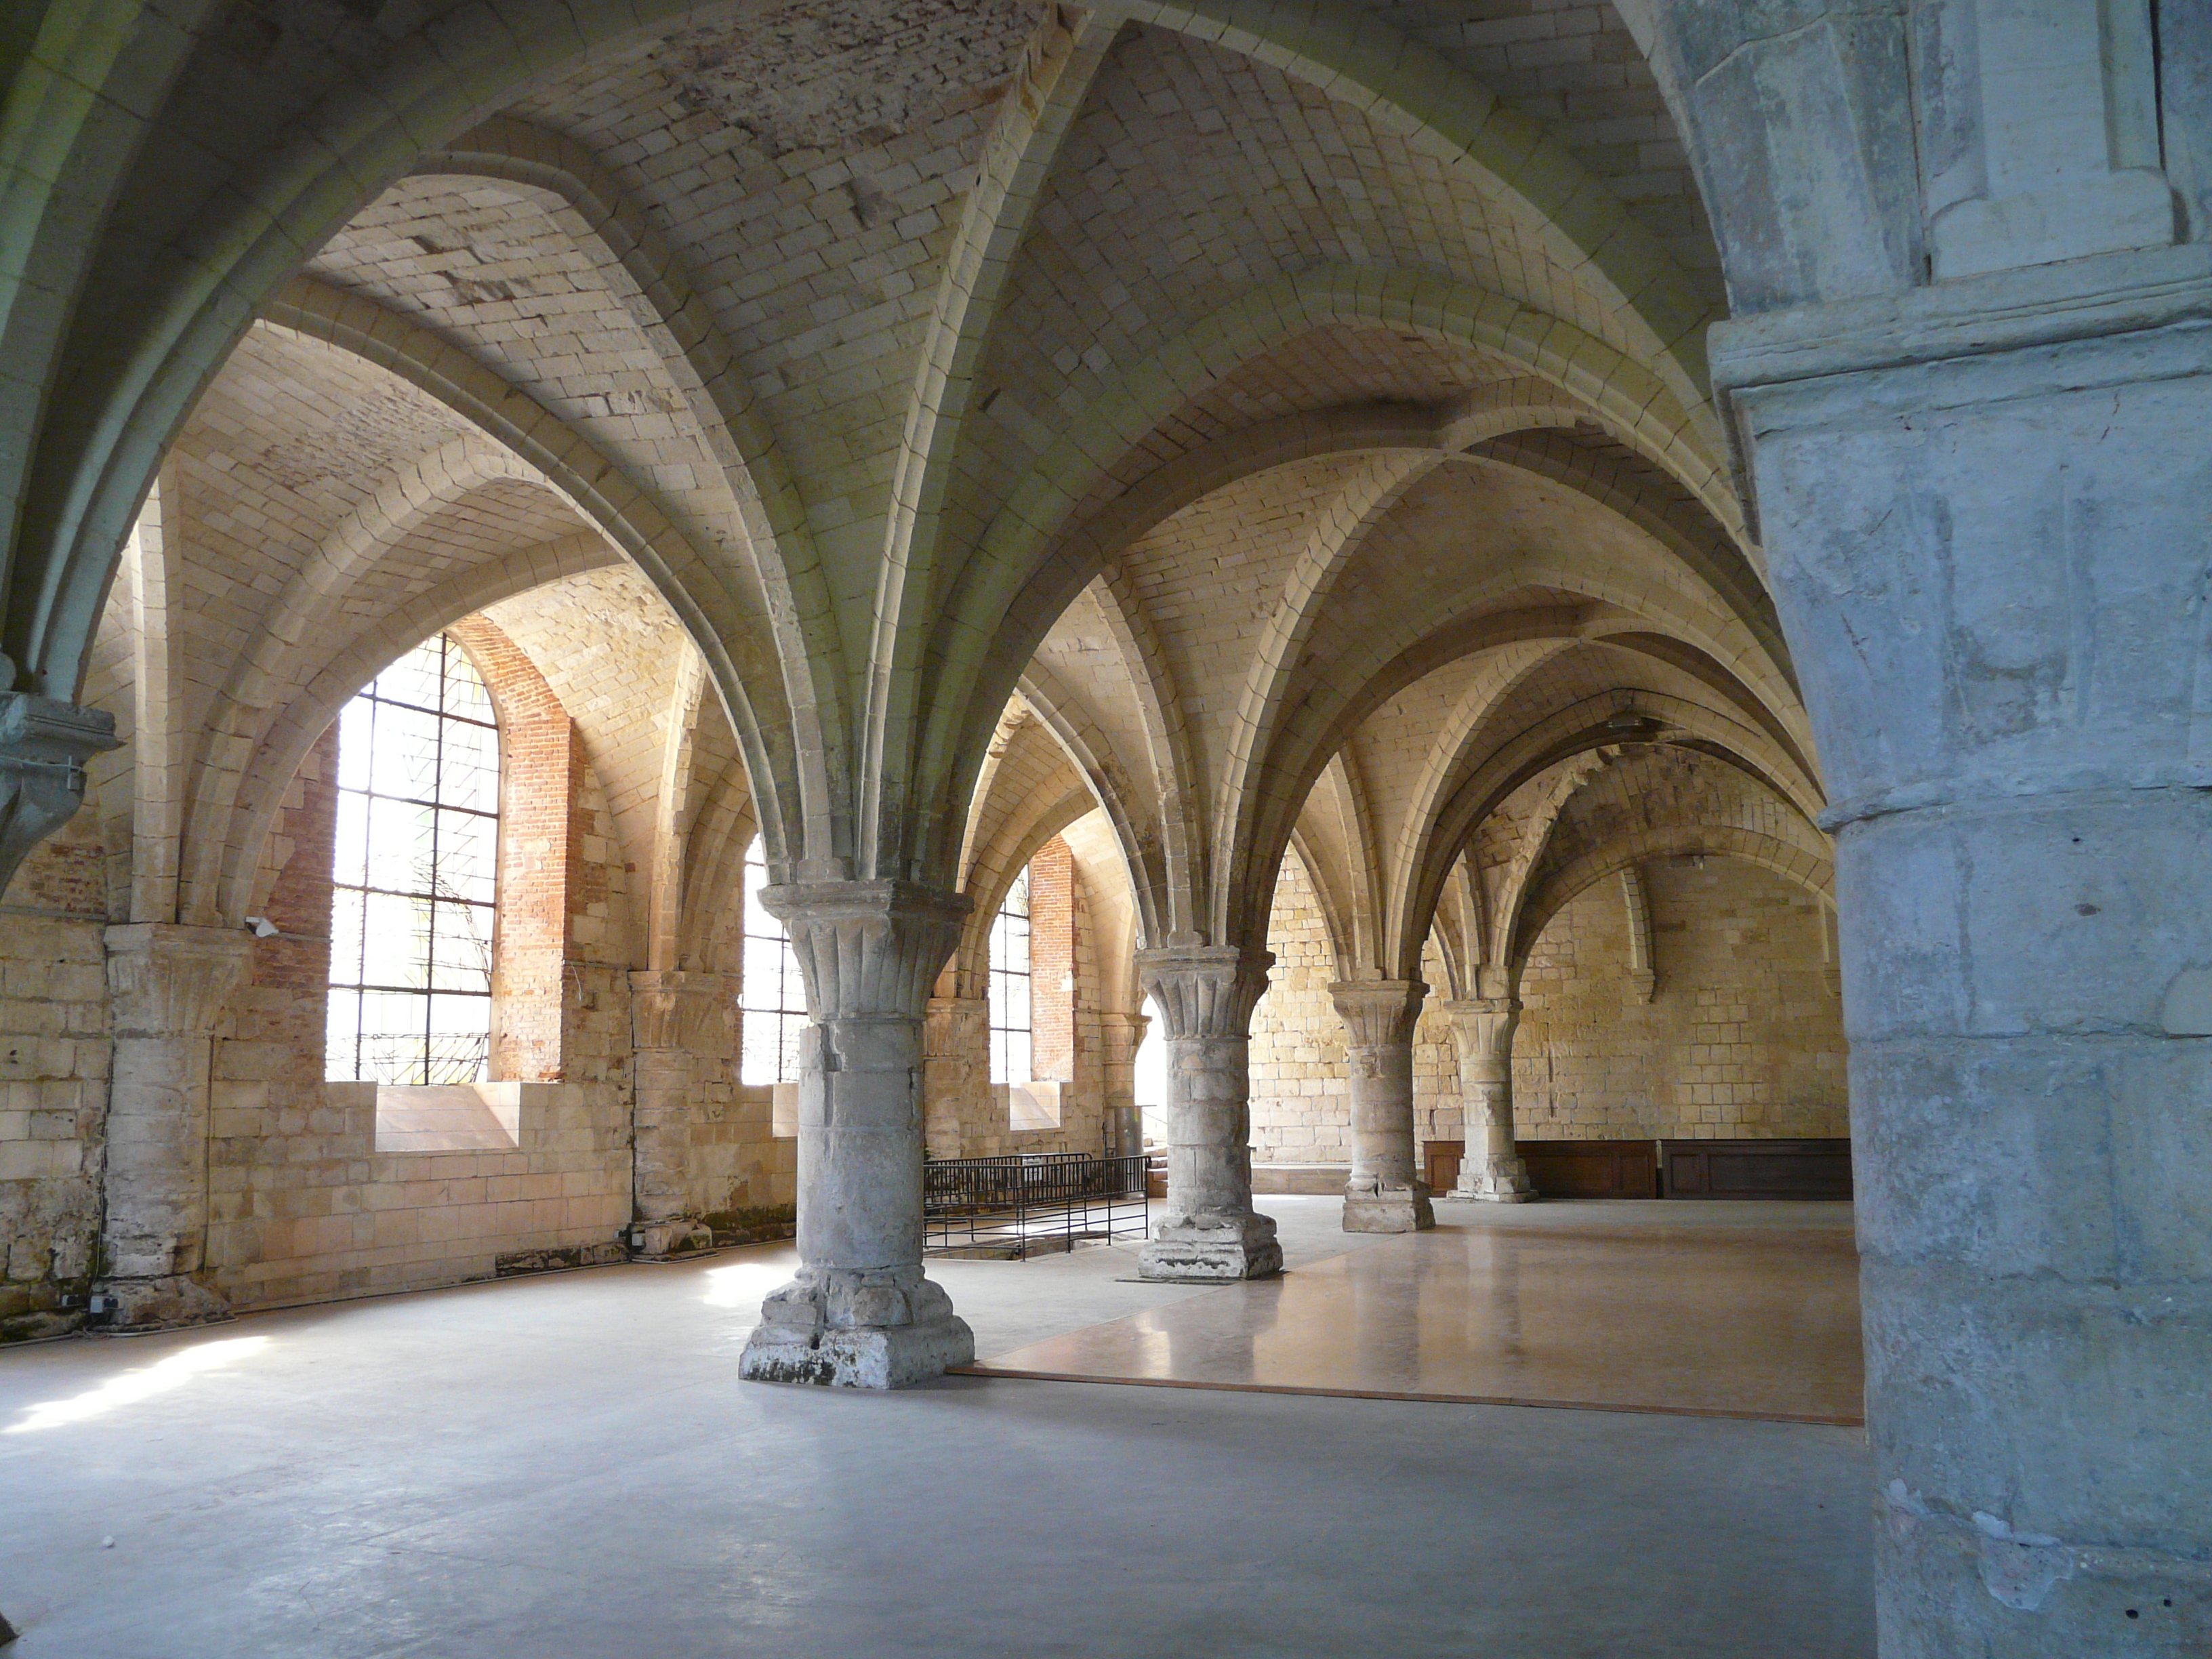 « Vaucelles, renaissance d’une abbaye cistercienne » par Jean-Marie Duhamel, le jeudi 24 novembre à 17h30 au Musée de l’Hospice Comtesse